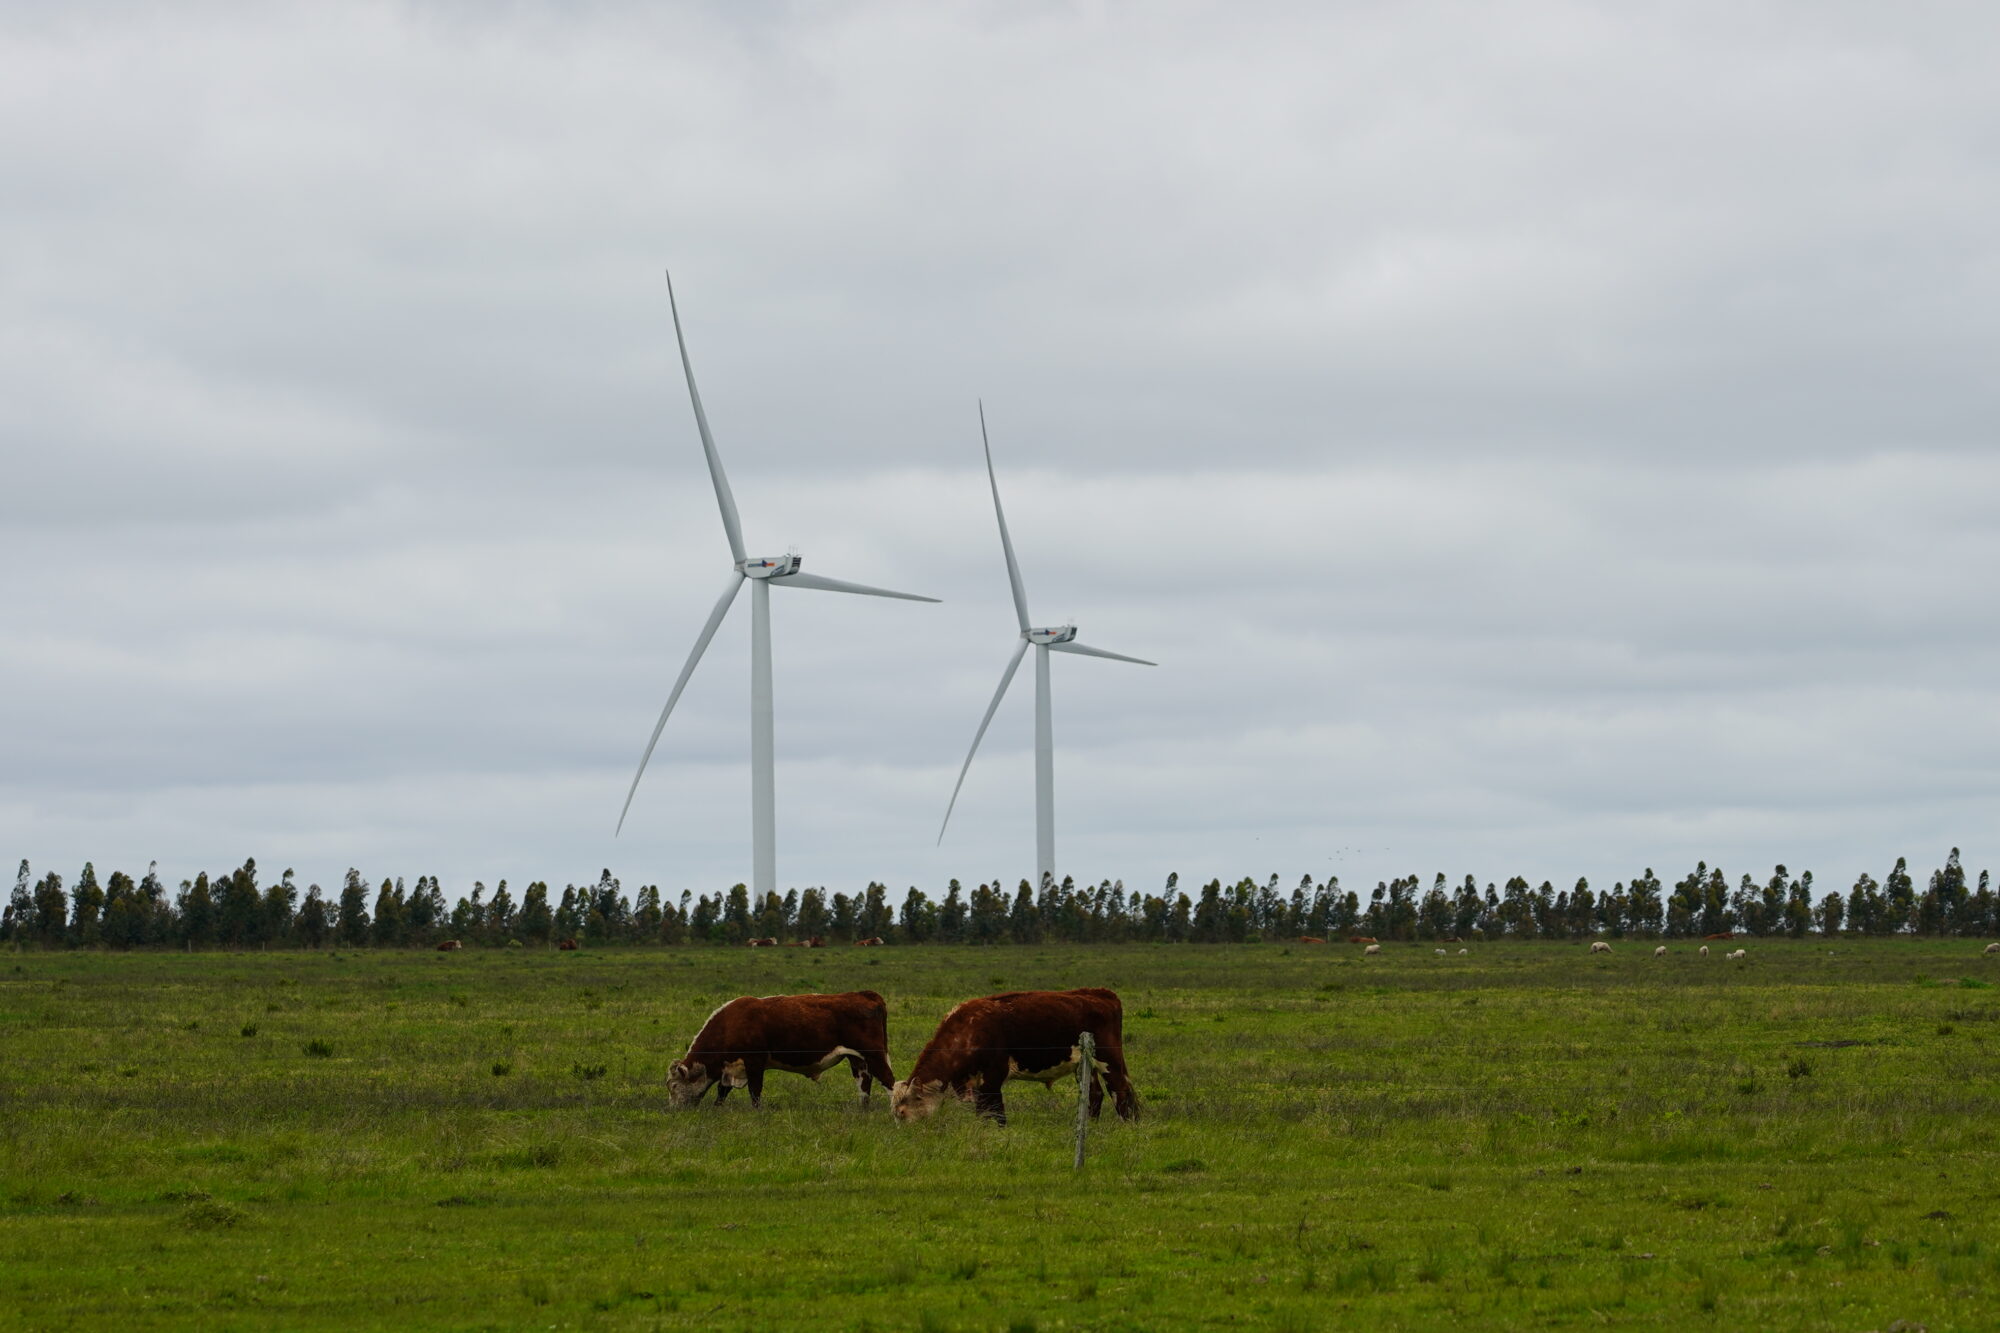 <p>Energias renováveis fornecem 98% da energia do Uruguai. Embora o país esteja a caminho da neutralidade de carbono, ainda há desafios pela frente, como o monitoramento e a redução de emissões em setores estratégicos, como o da carne bovina (Imagem: Diego Casal)</p>